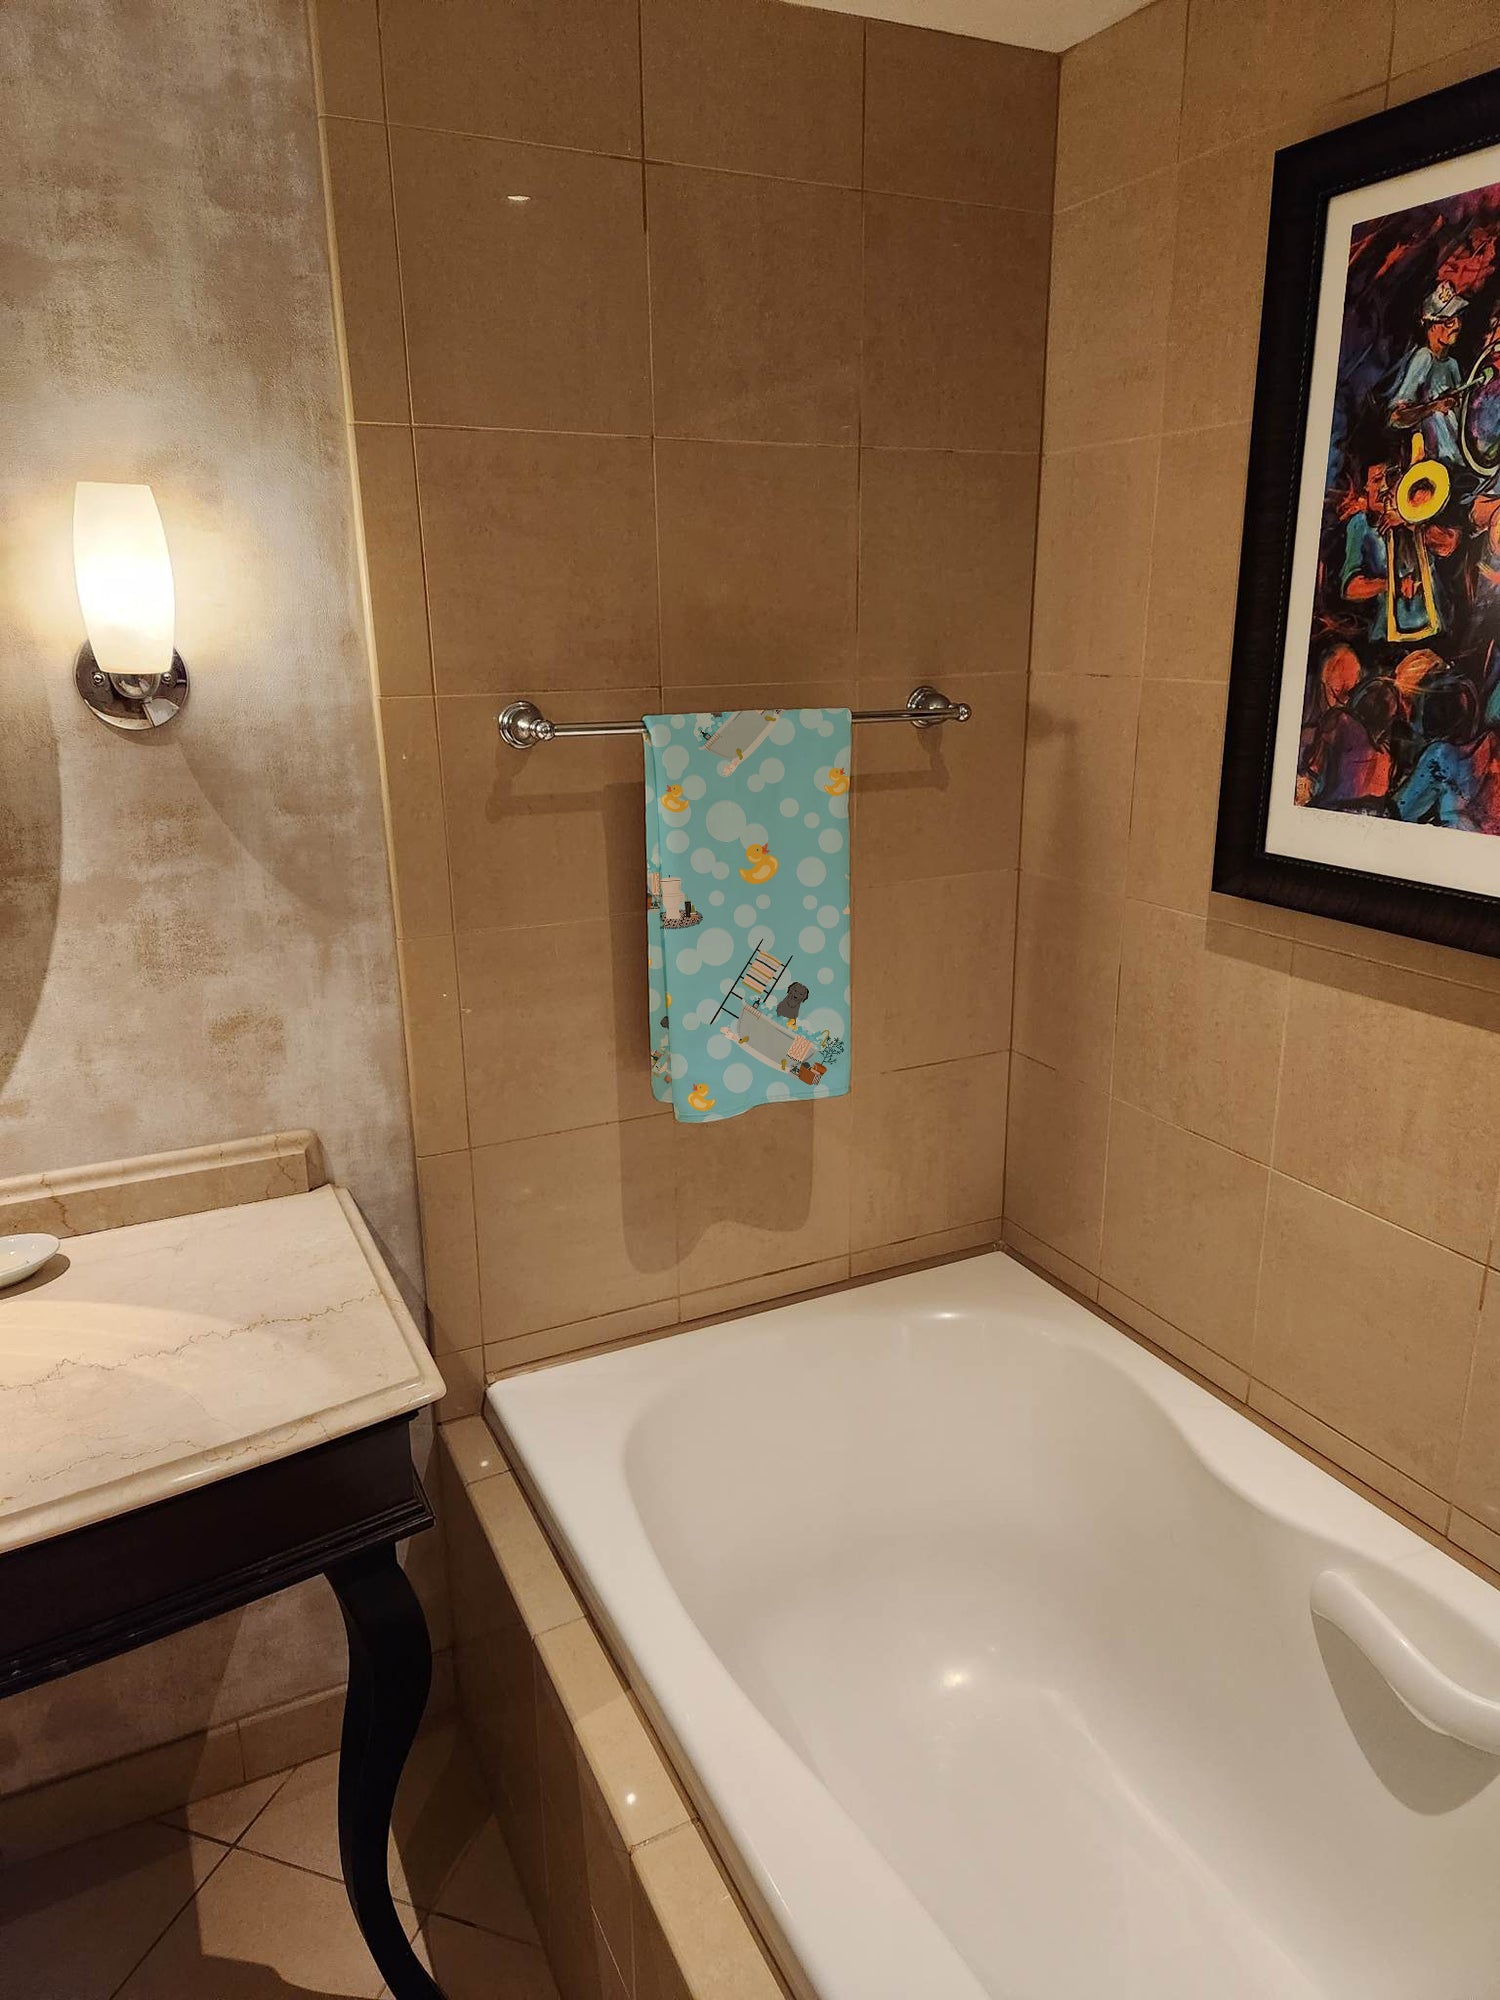 Black Briard in Bathtub Bath Towel Large